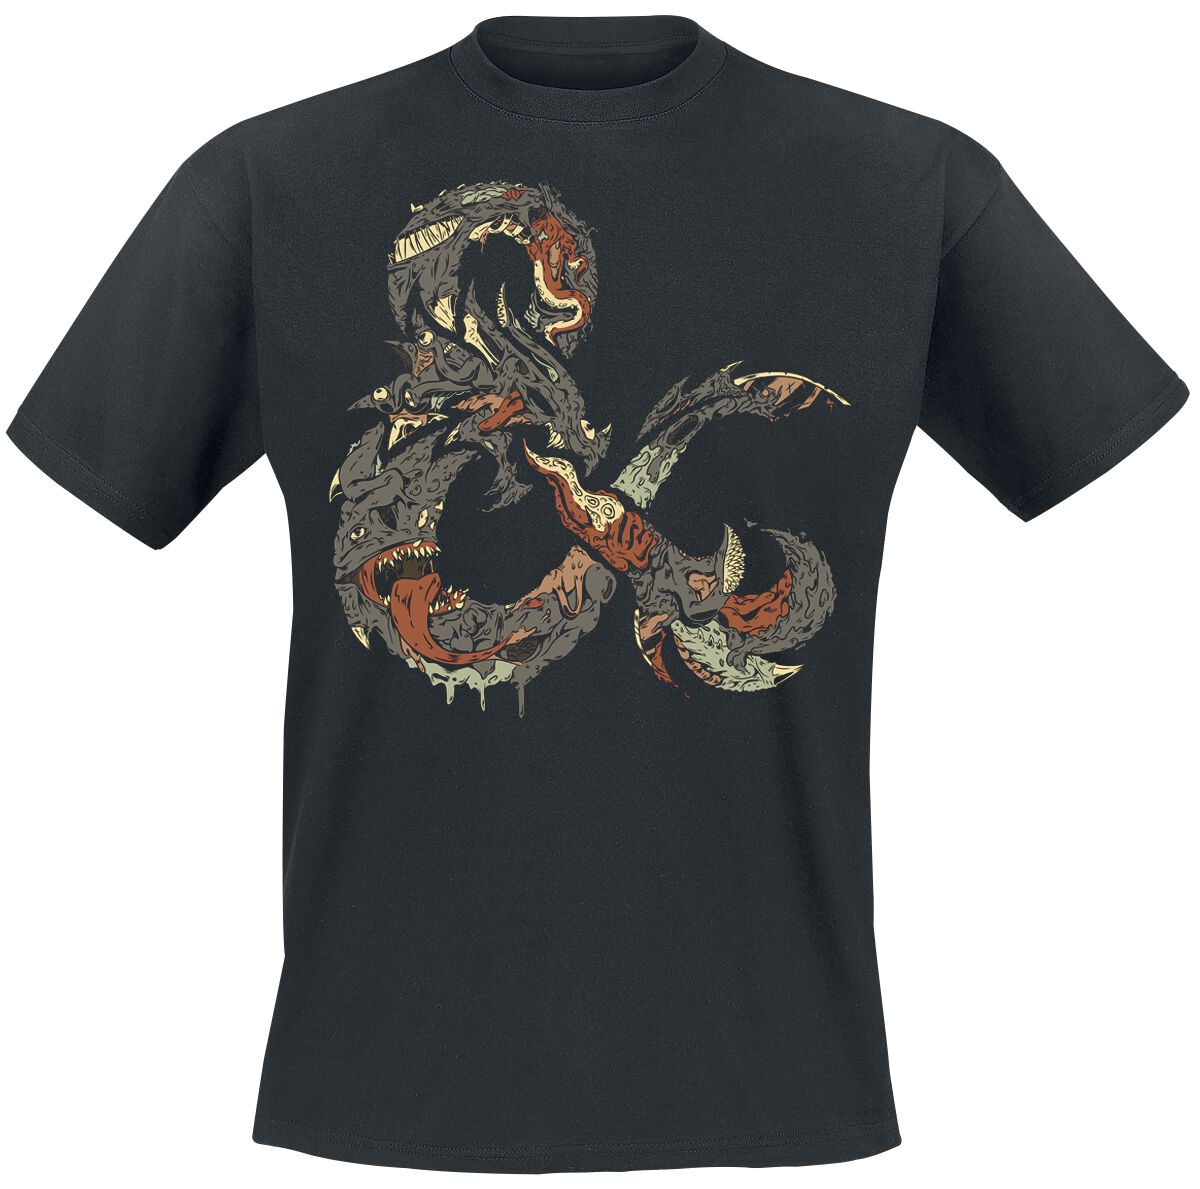 Dungeons and Dragons - Gaming T-Shirt - Ampersand Monster - S bis XXL - für Männer - Größe M - schwarz  - EMP exklusives Merchandise!